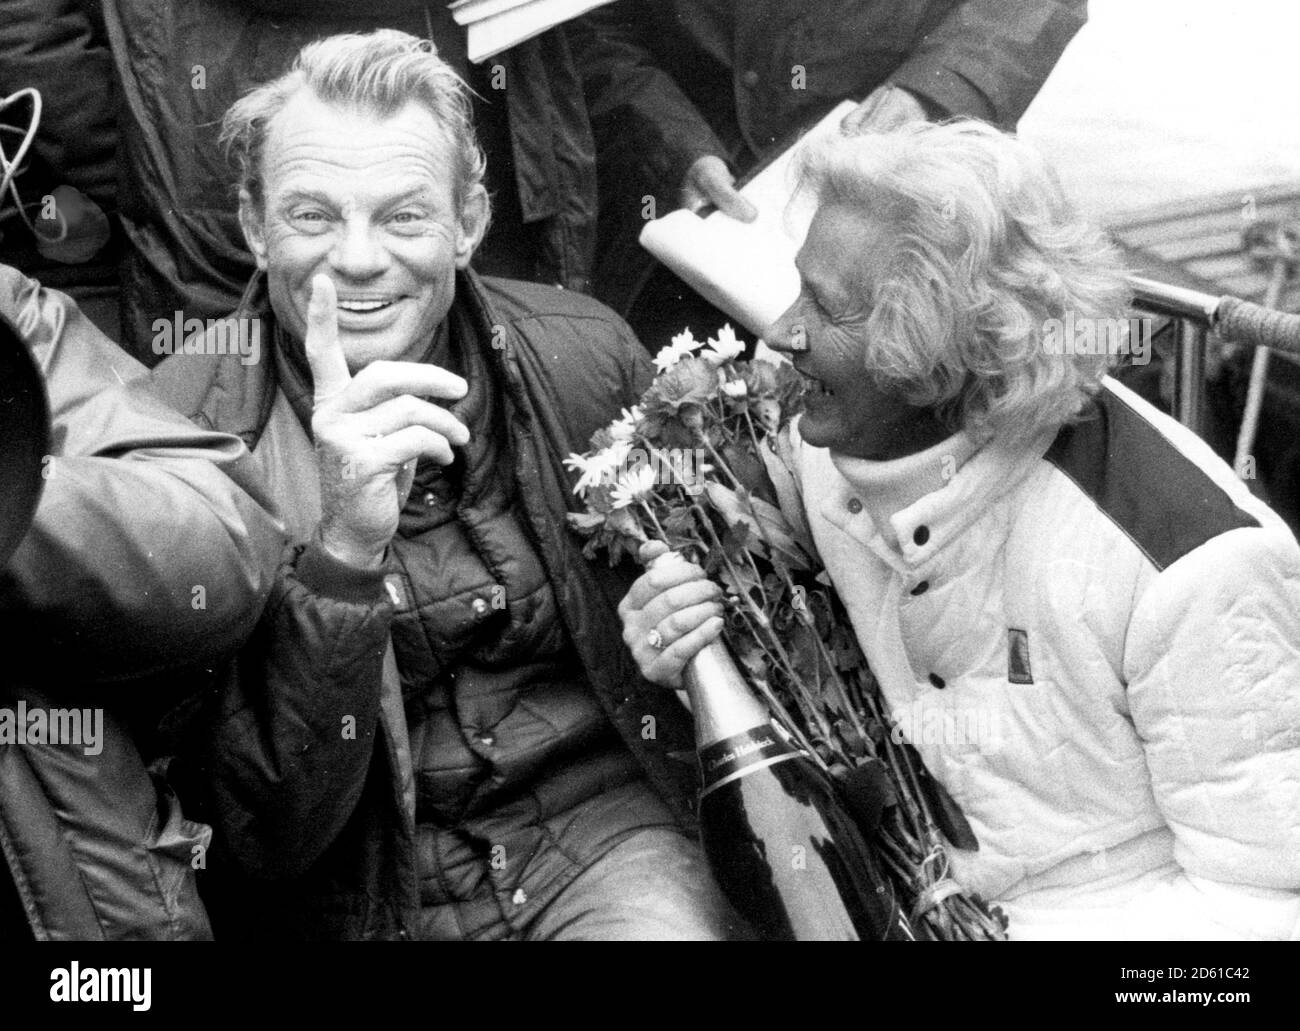 SKIPPER OF ROUND THE WORLD YACHT FLYER, CORNELIUS VAN RIETSCHOTEN REUNITED WITH HIS WIFE INGA AFTER WINNING THE 1981 ROUND THE WORLD YACHT RACE. Stock Photo